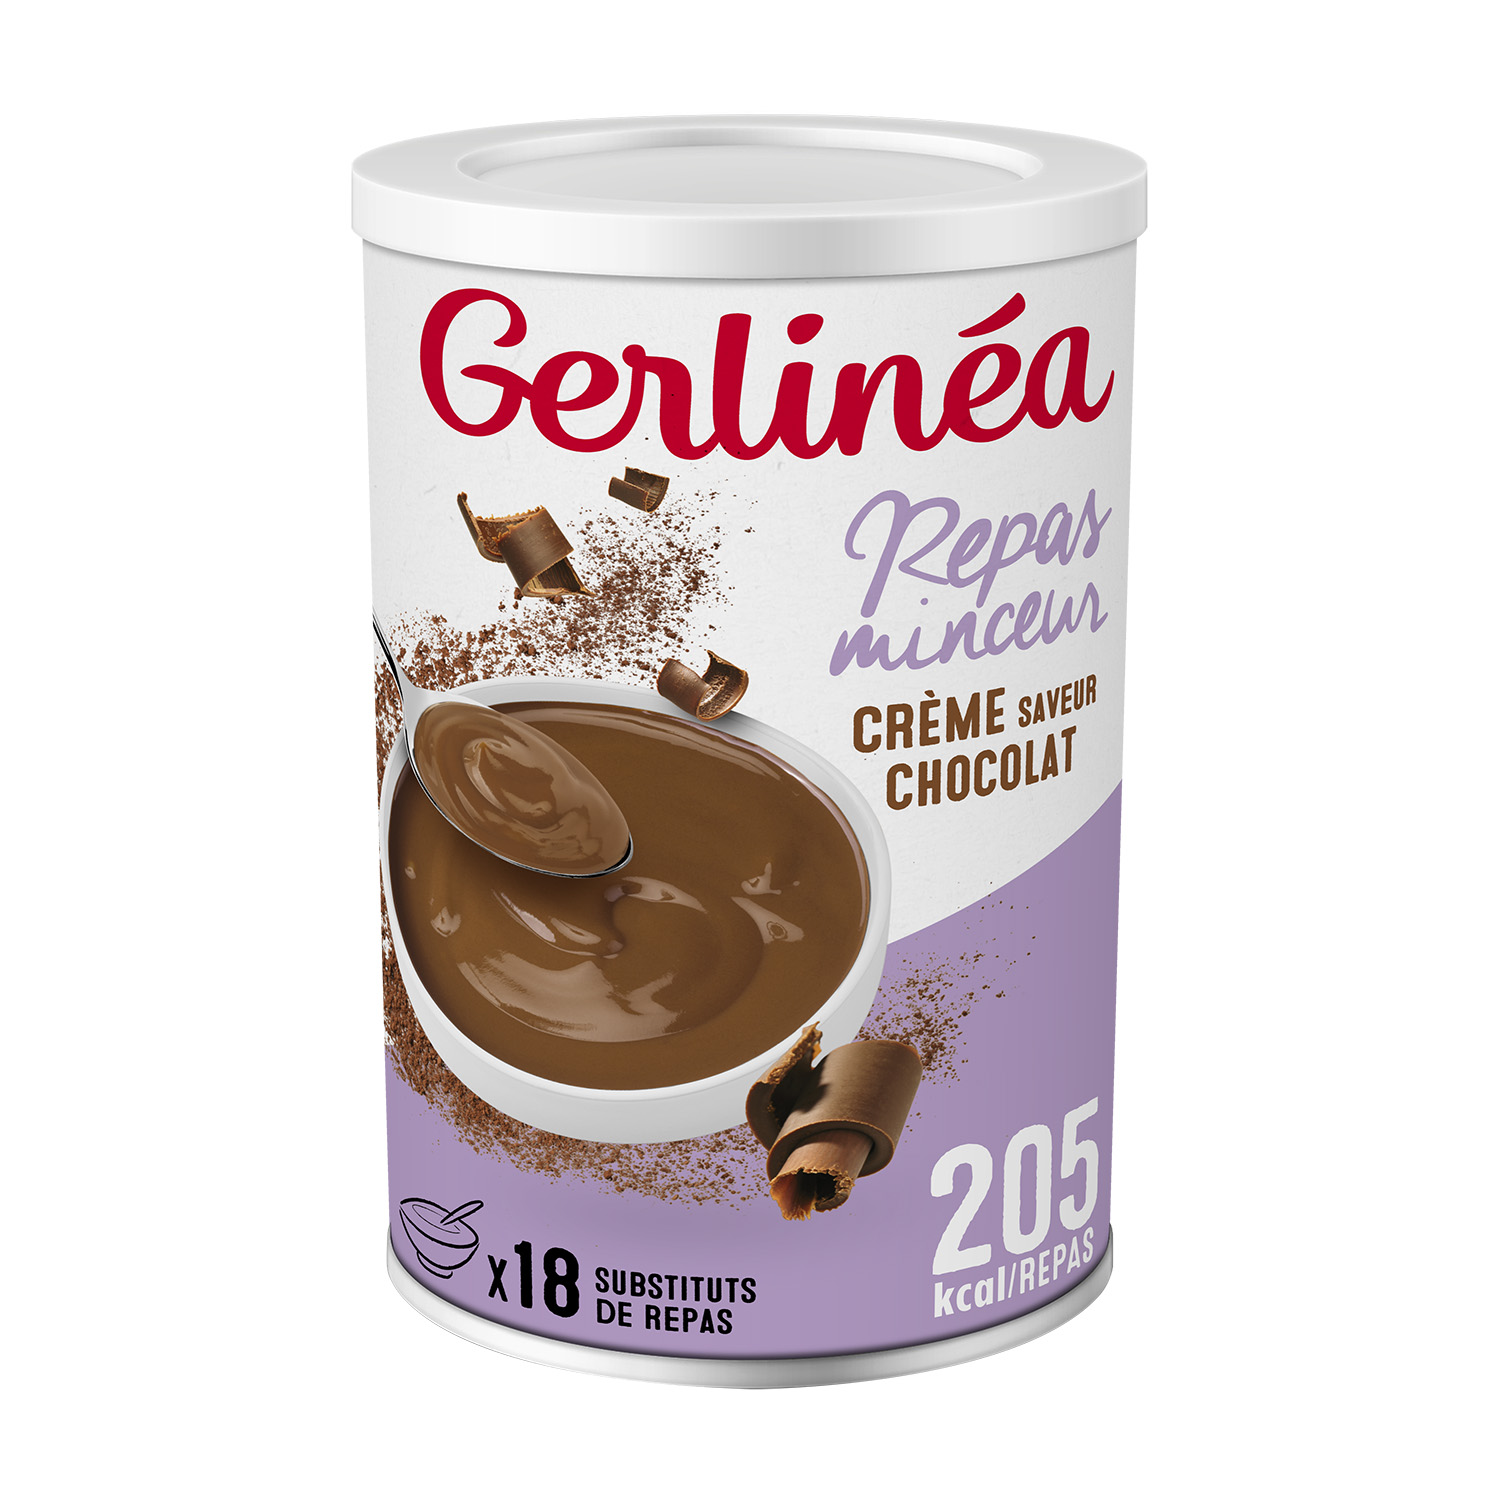 Barre céréales chocolat orange GERLINEA : la boite de 372g à Prix